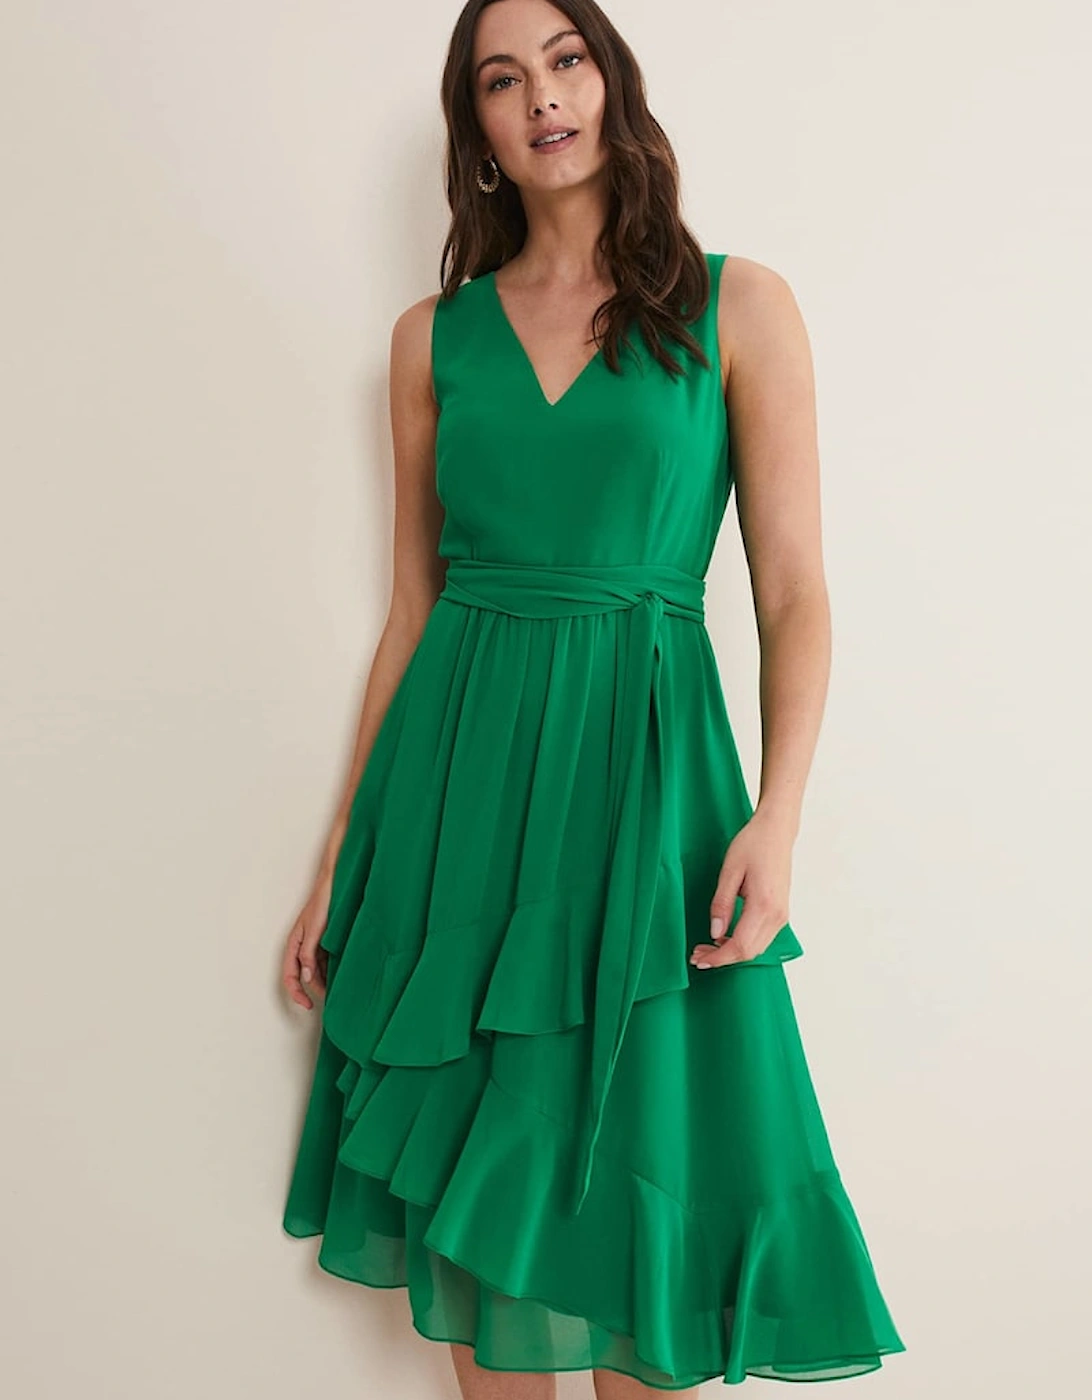 Breesha Green Midaxi Dress, 7 of 6